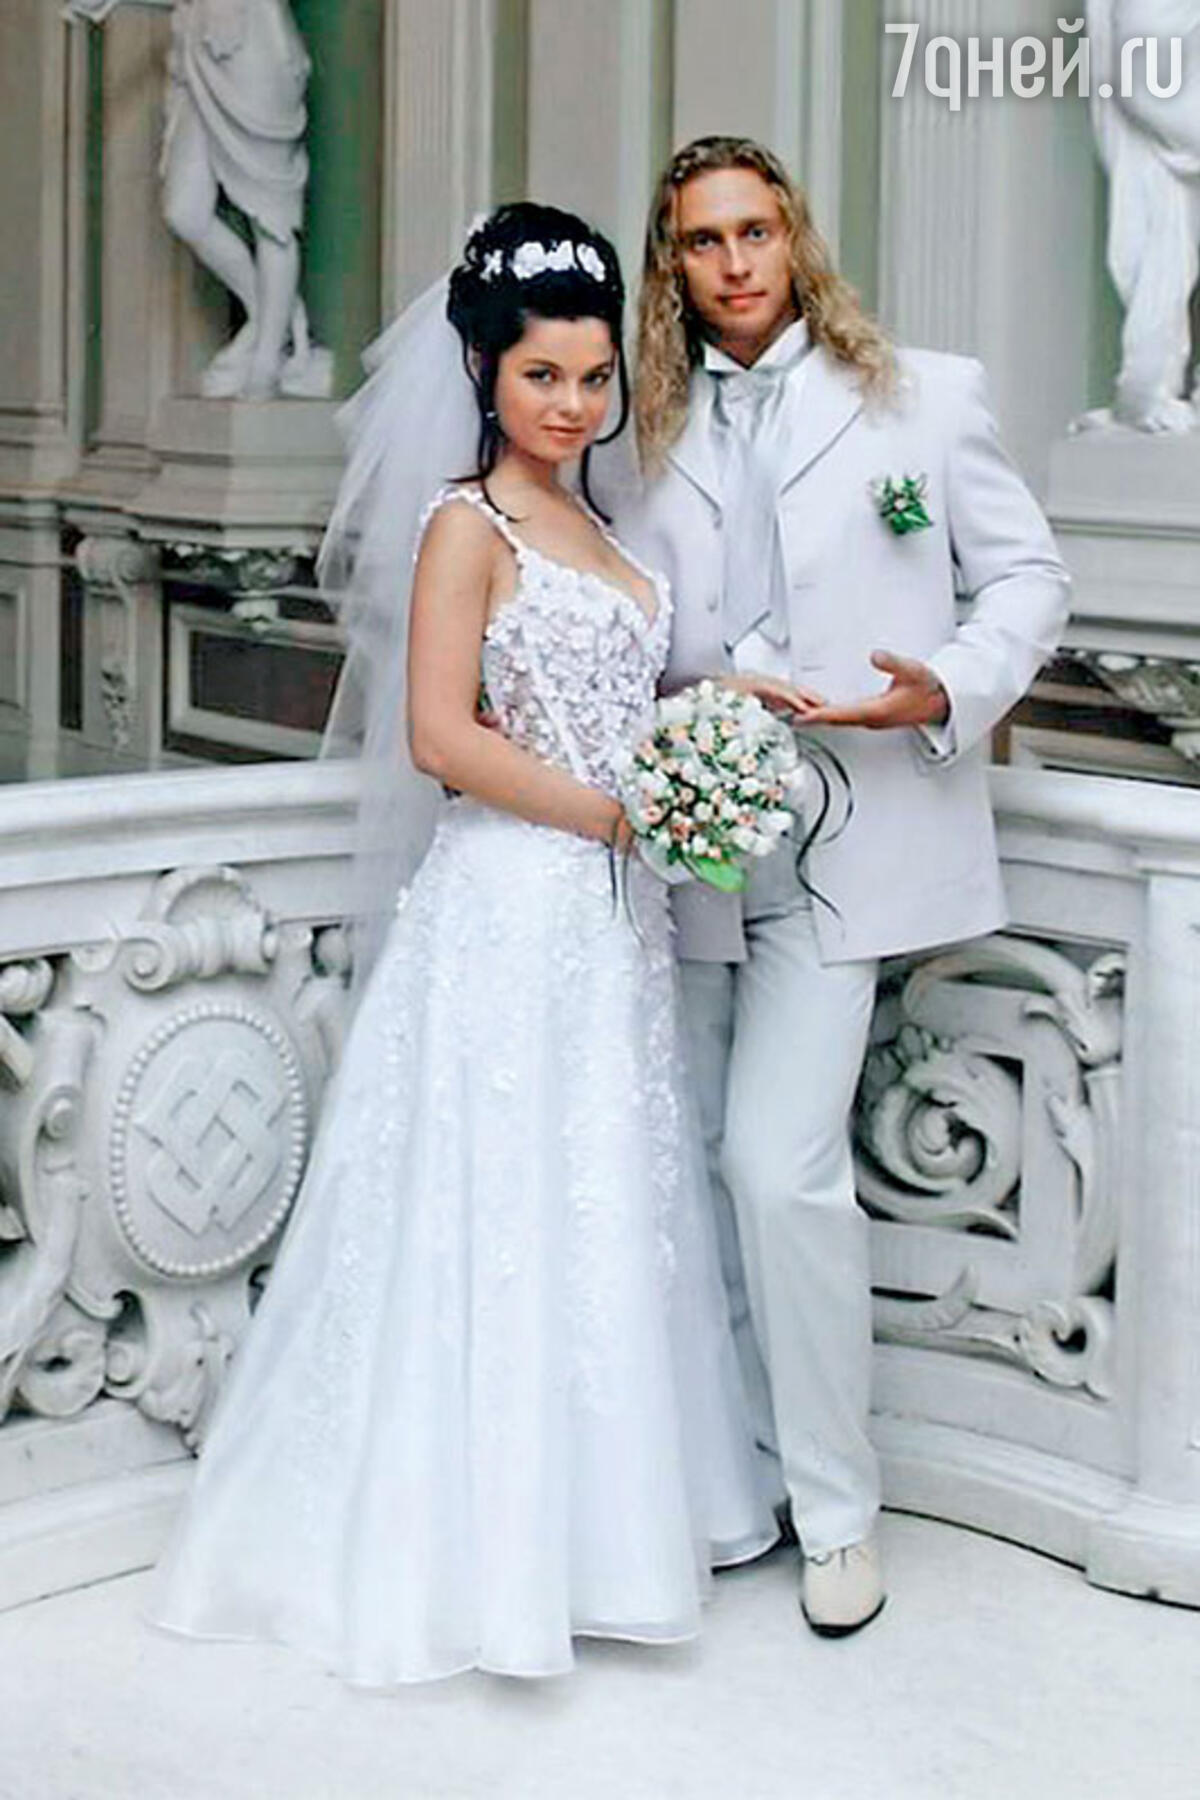 Невеста выебали на примерке платья: порно видео на заточка63.рф